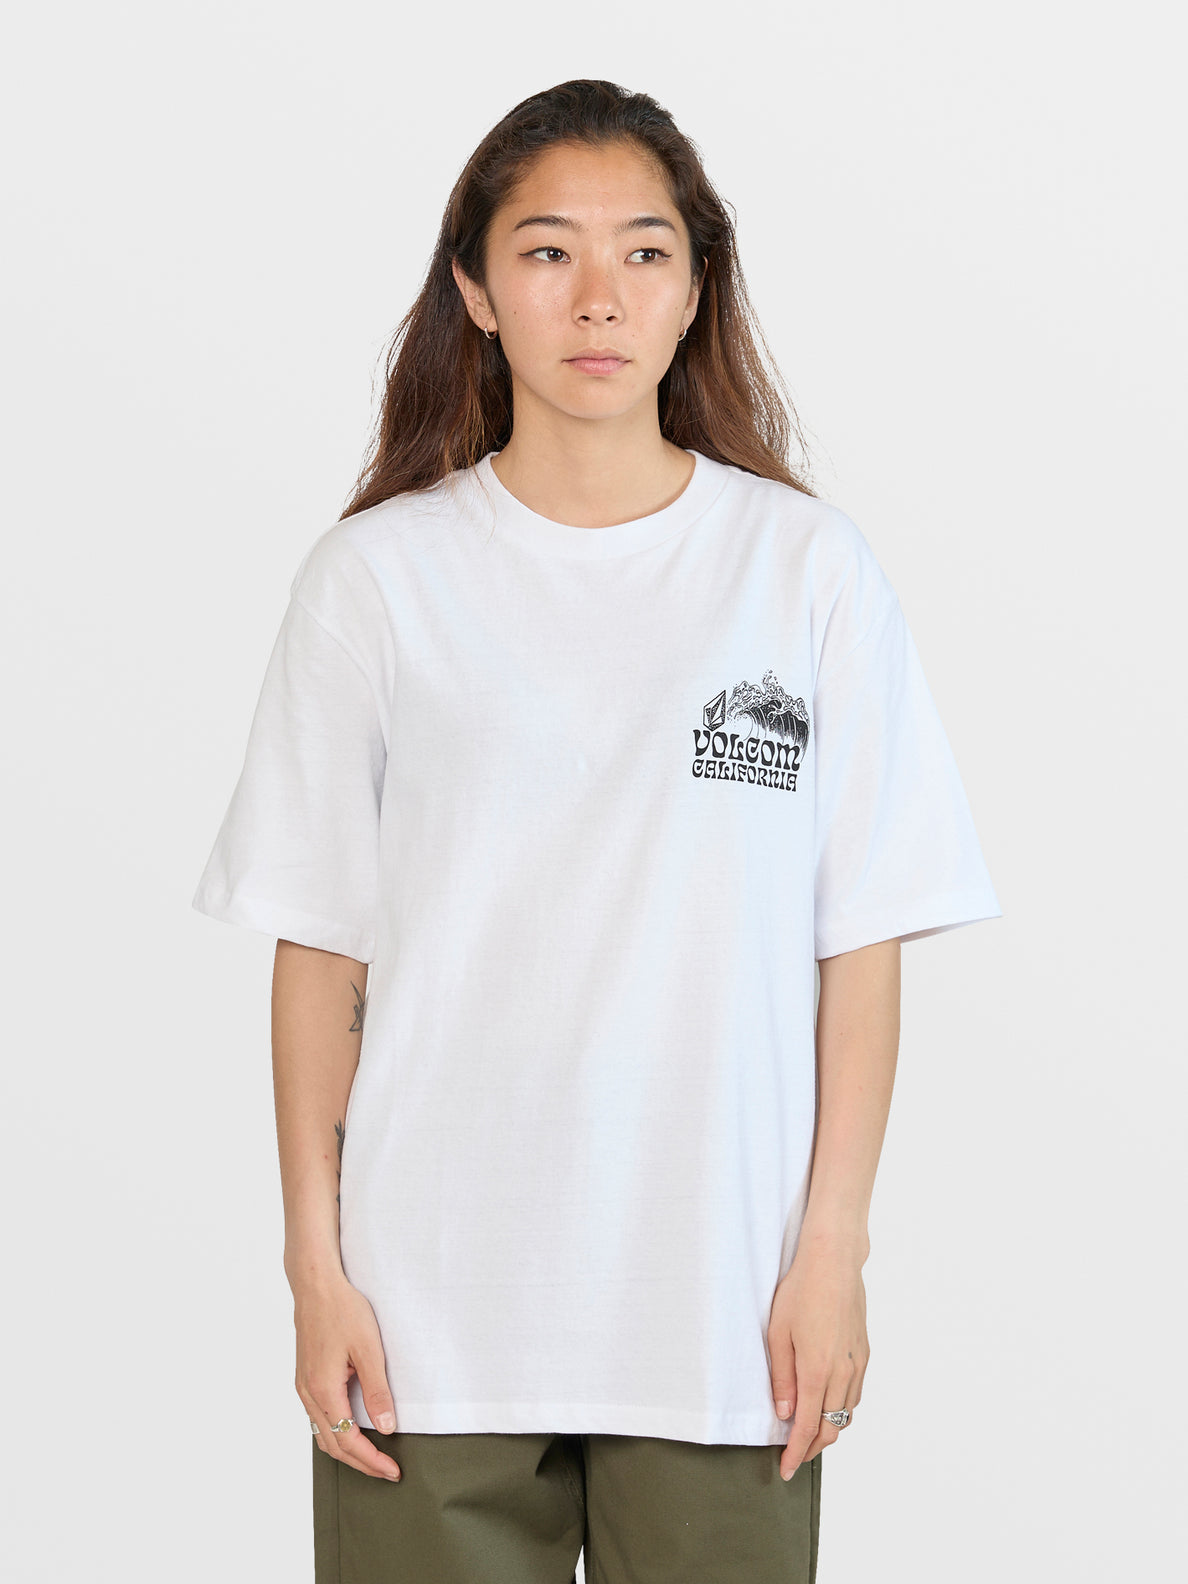 Goalden Bear Short Sleeve Tee Shirt - White